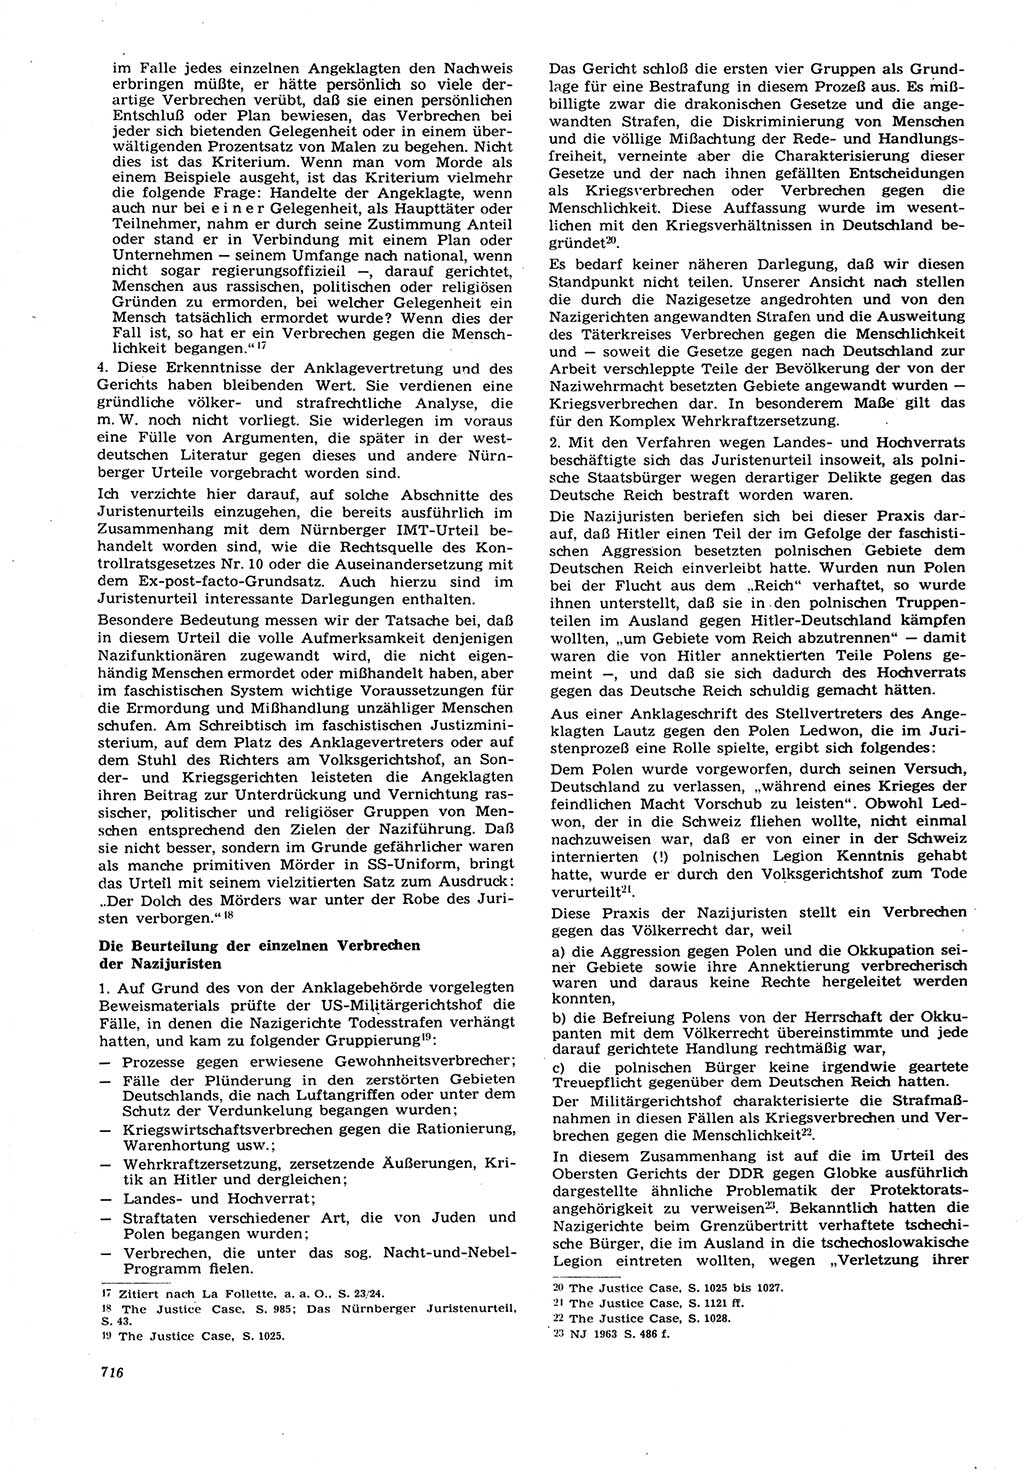 Neue Justiz (NJ), Zeitschrift für Recht und Rechtswissenschaft [Deutsche Demokratische Republik (DDR)], 21. Jahrgang 1967, Seite 716 (NJ DDR 1967, S. 716)